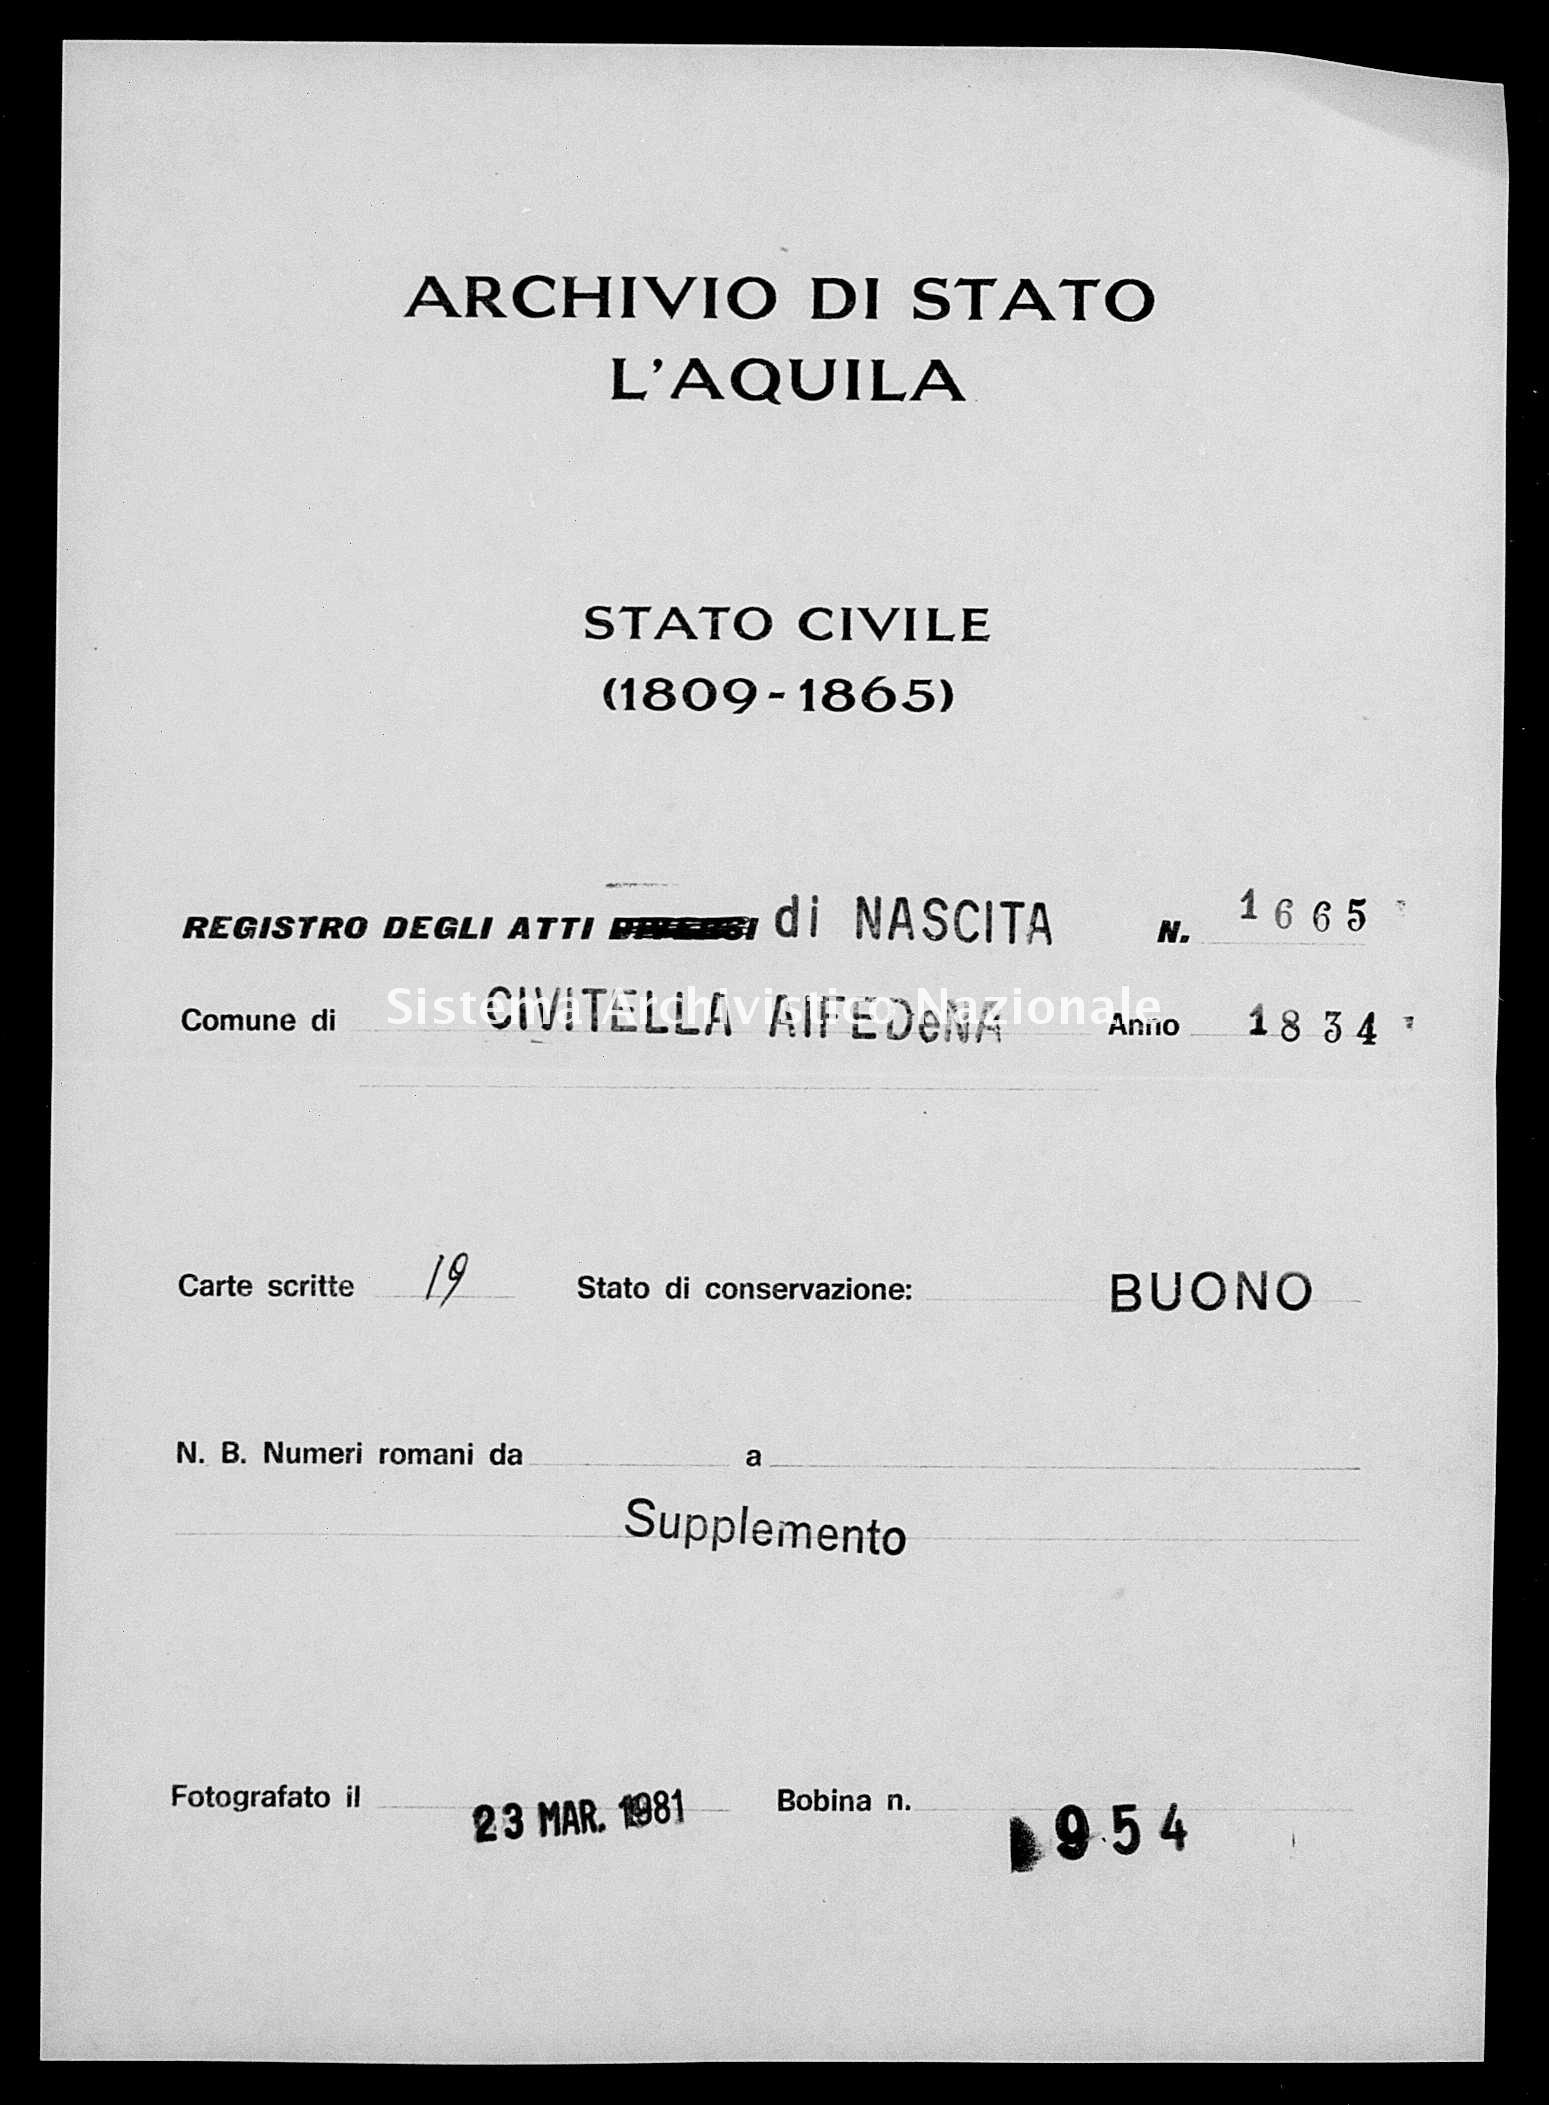 Archivio di stato di L'aquila - Stato civile della restaurazione - Civitella Alfedena - Nati, battesimi - 1834 - 1665 -